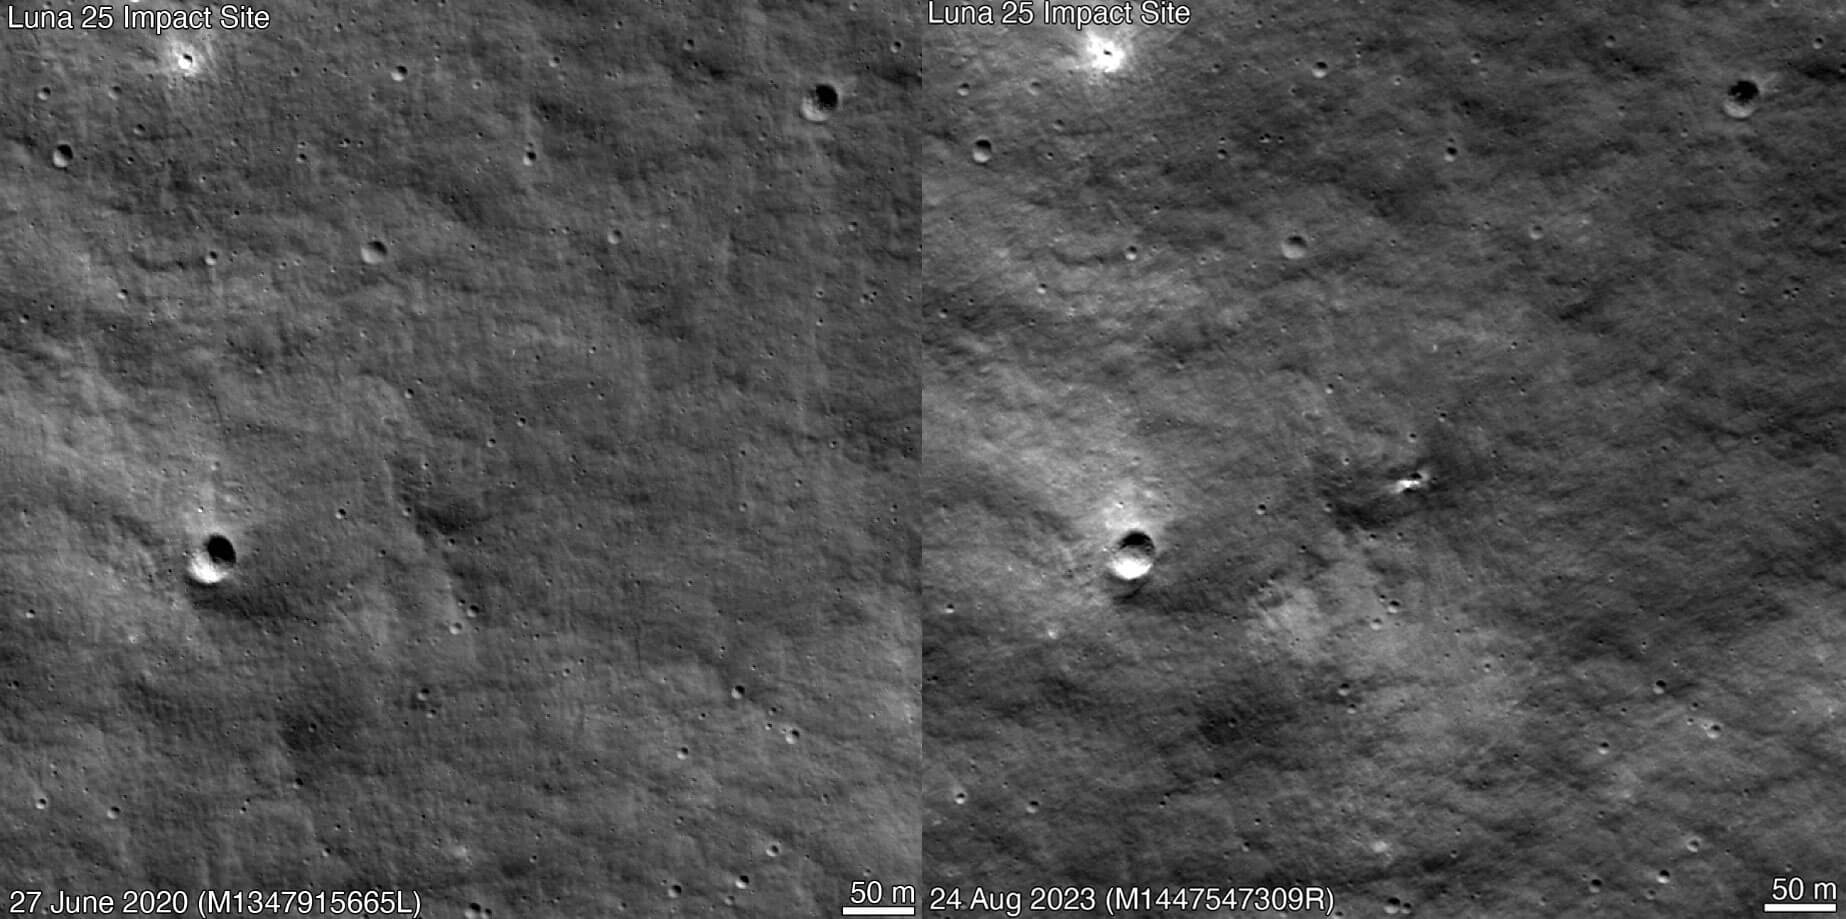 Место крушения станции «Луна-25». Фотографии предполагаемого места падения станции «Луна-25» за 2022 и 2023 год. Фото.